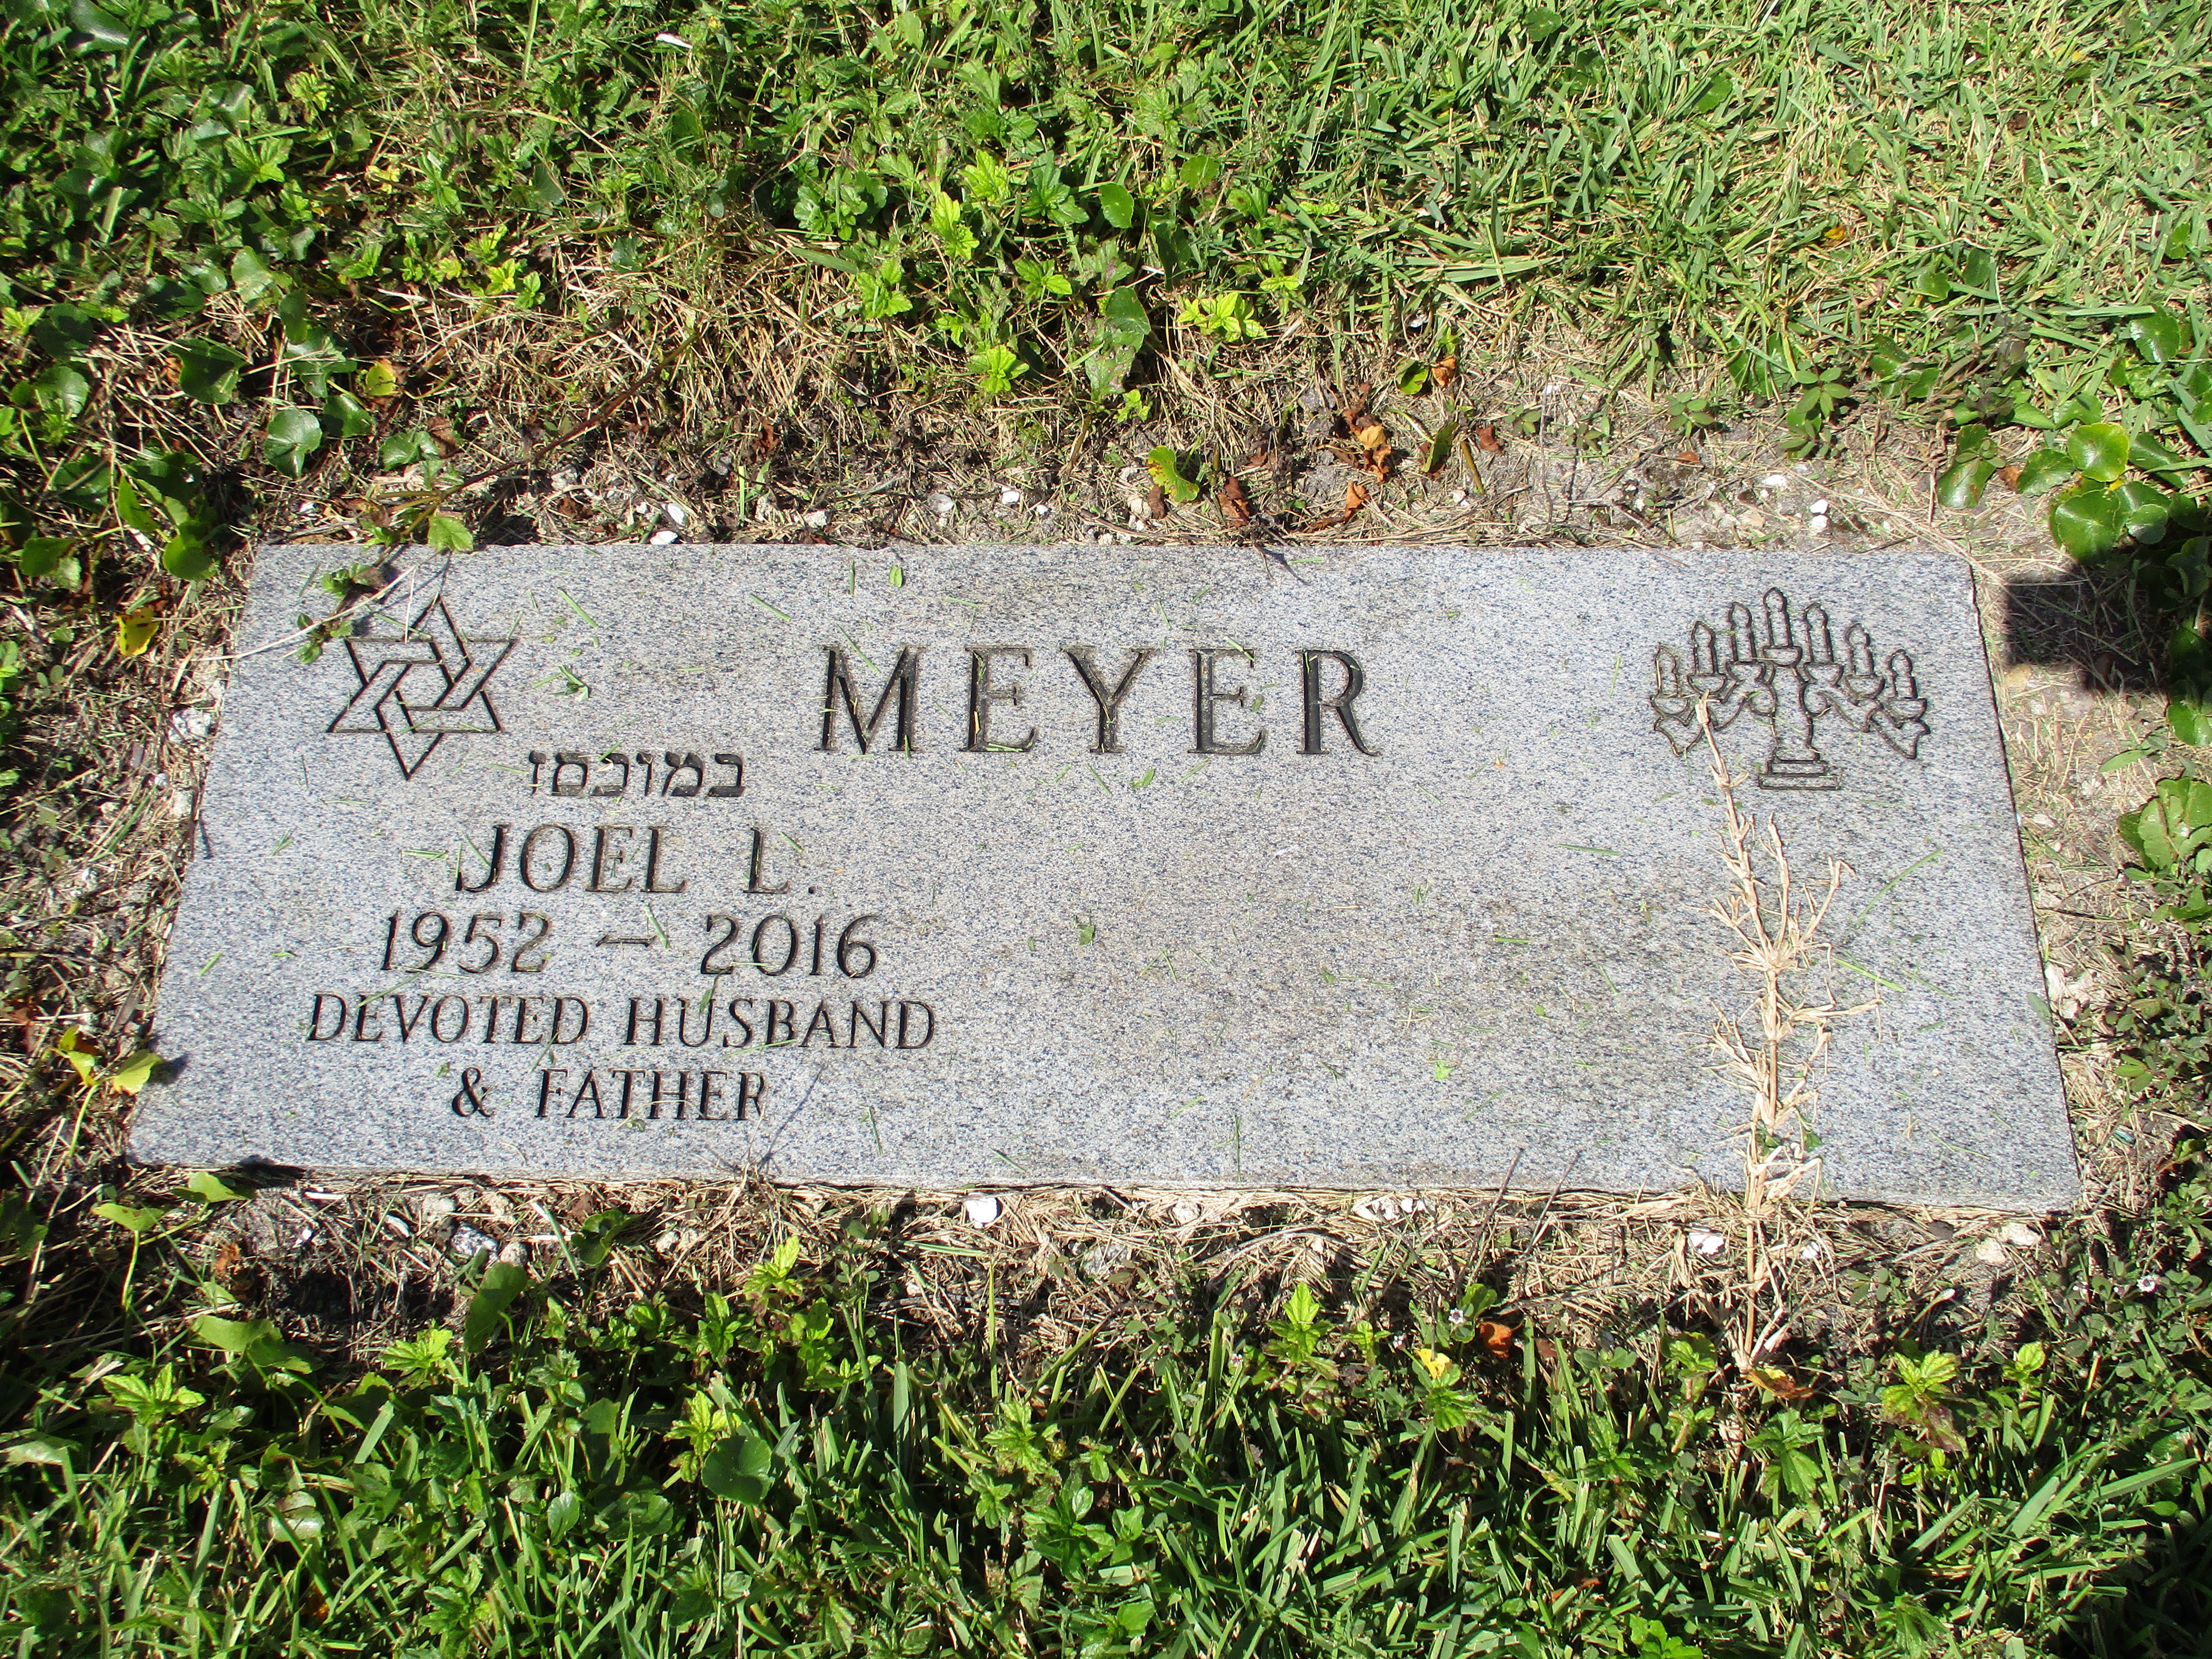 Joel L Meyer